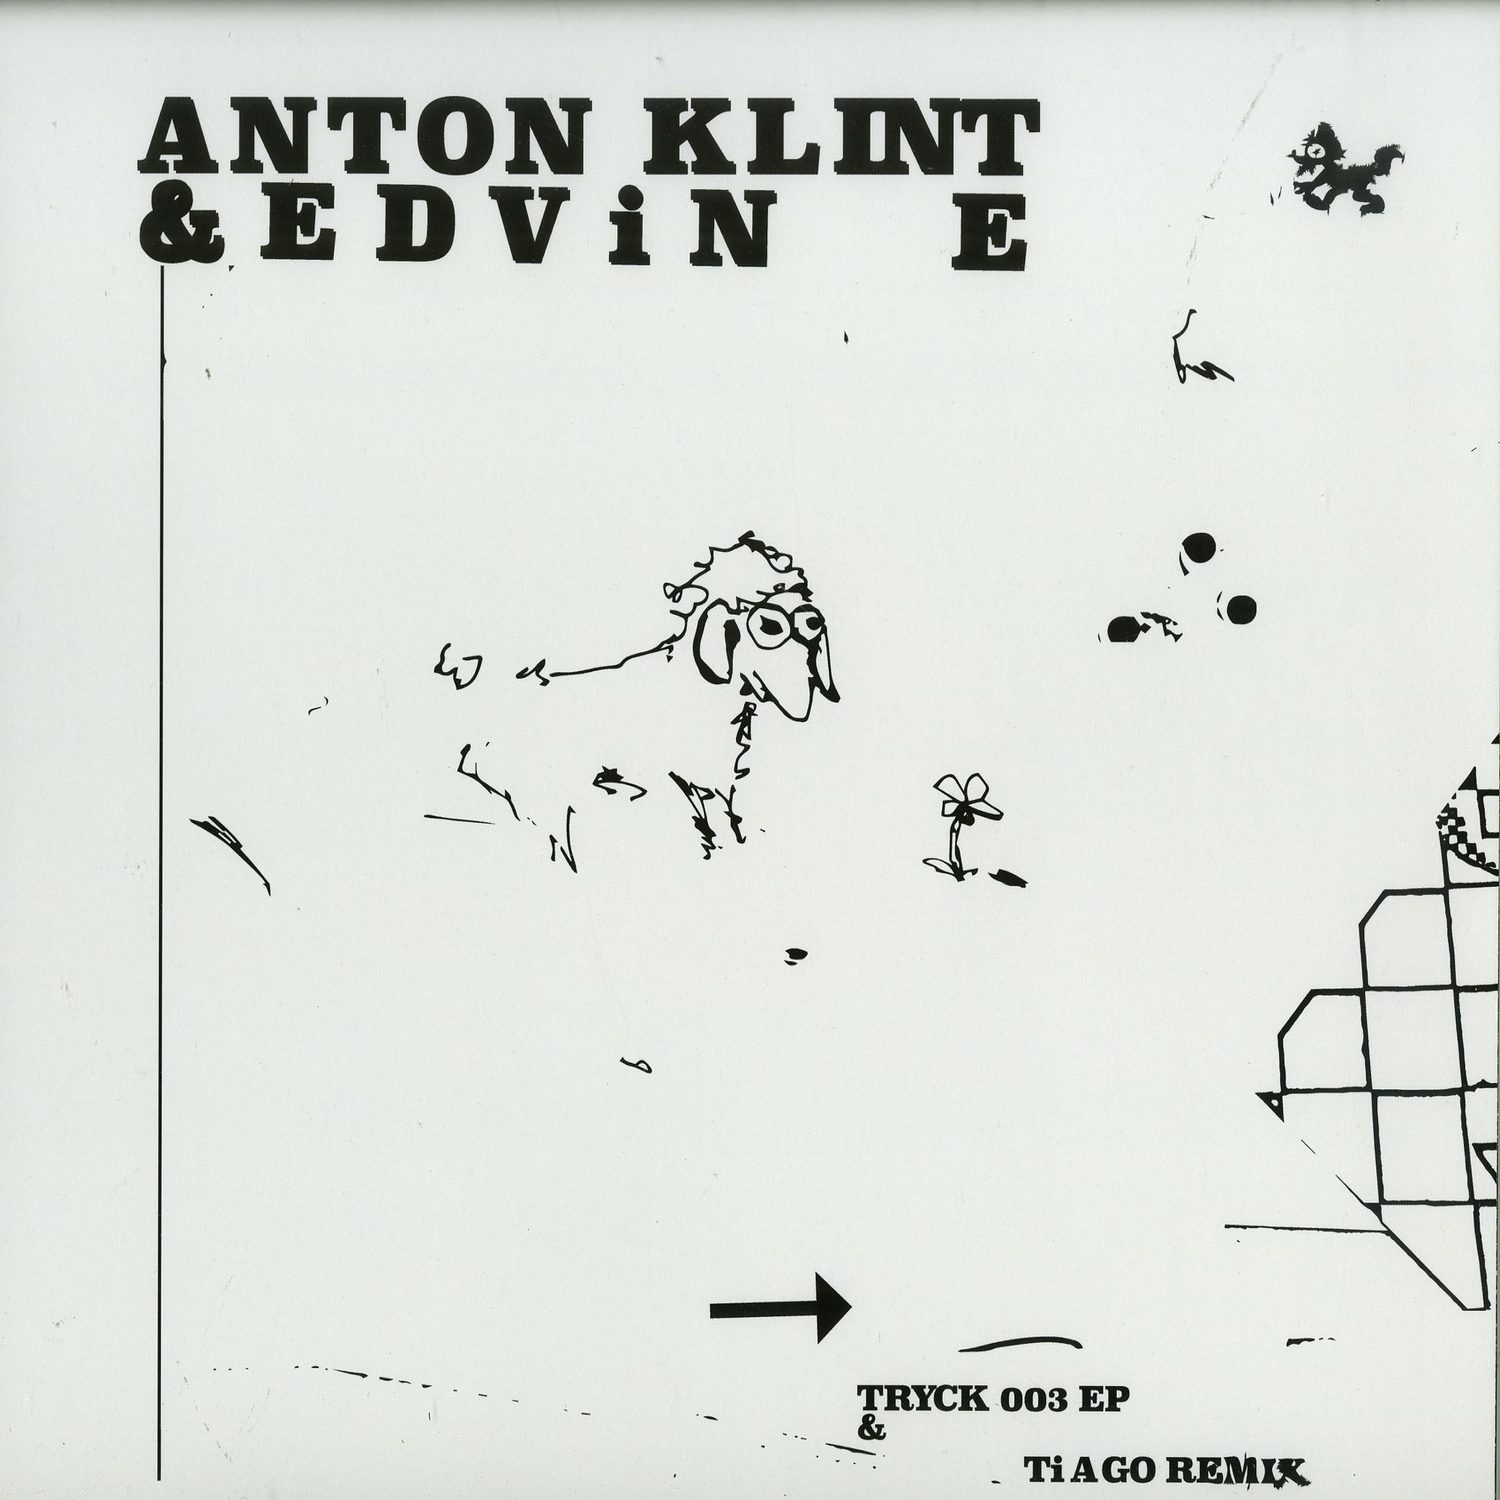 Anton Klint & Edvin E - TRYCK003 EP